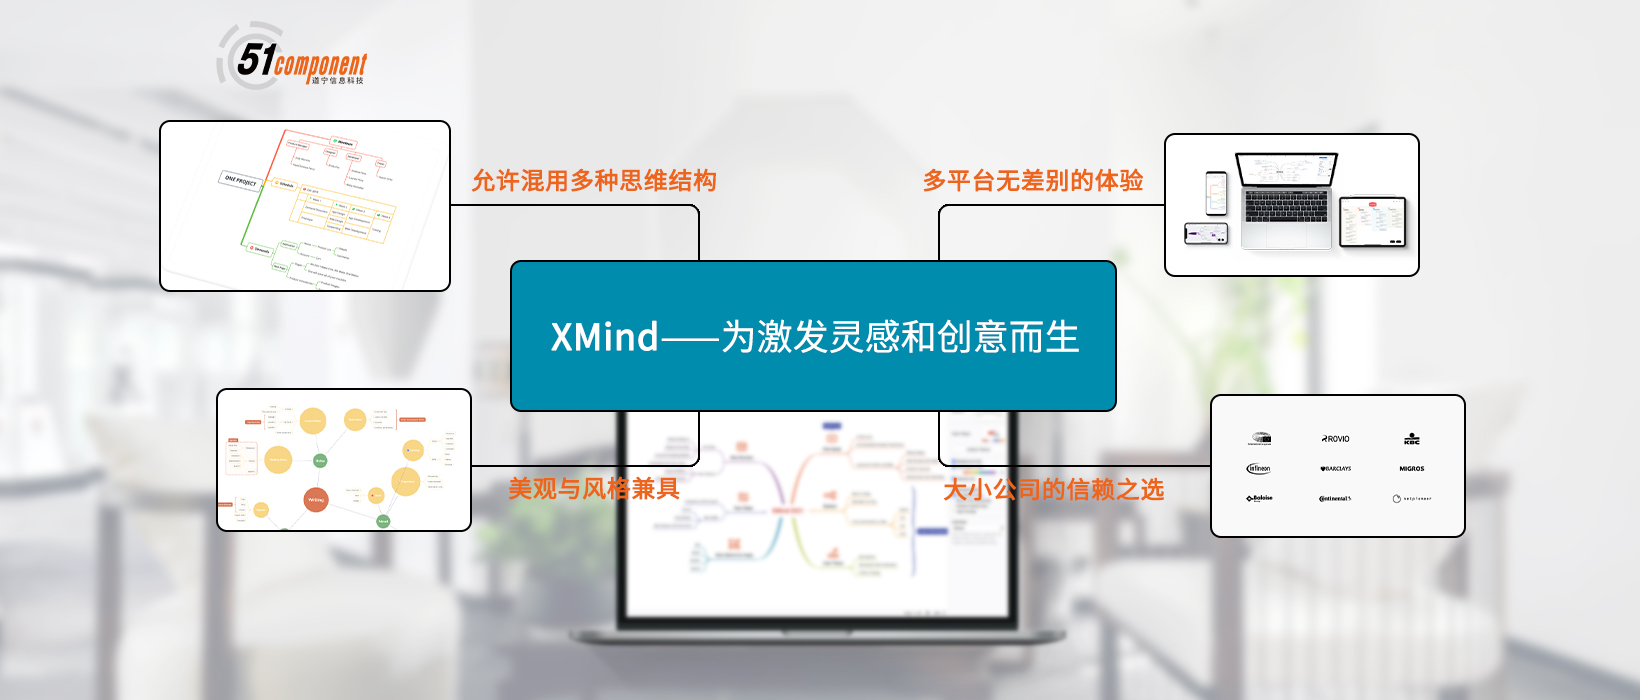 为激发灵感和创意而生，上海道宁联合XMind为您带来全功能的思维导图和头脑风暴软件